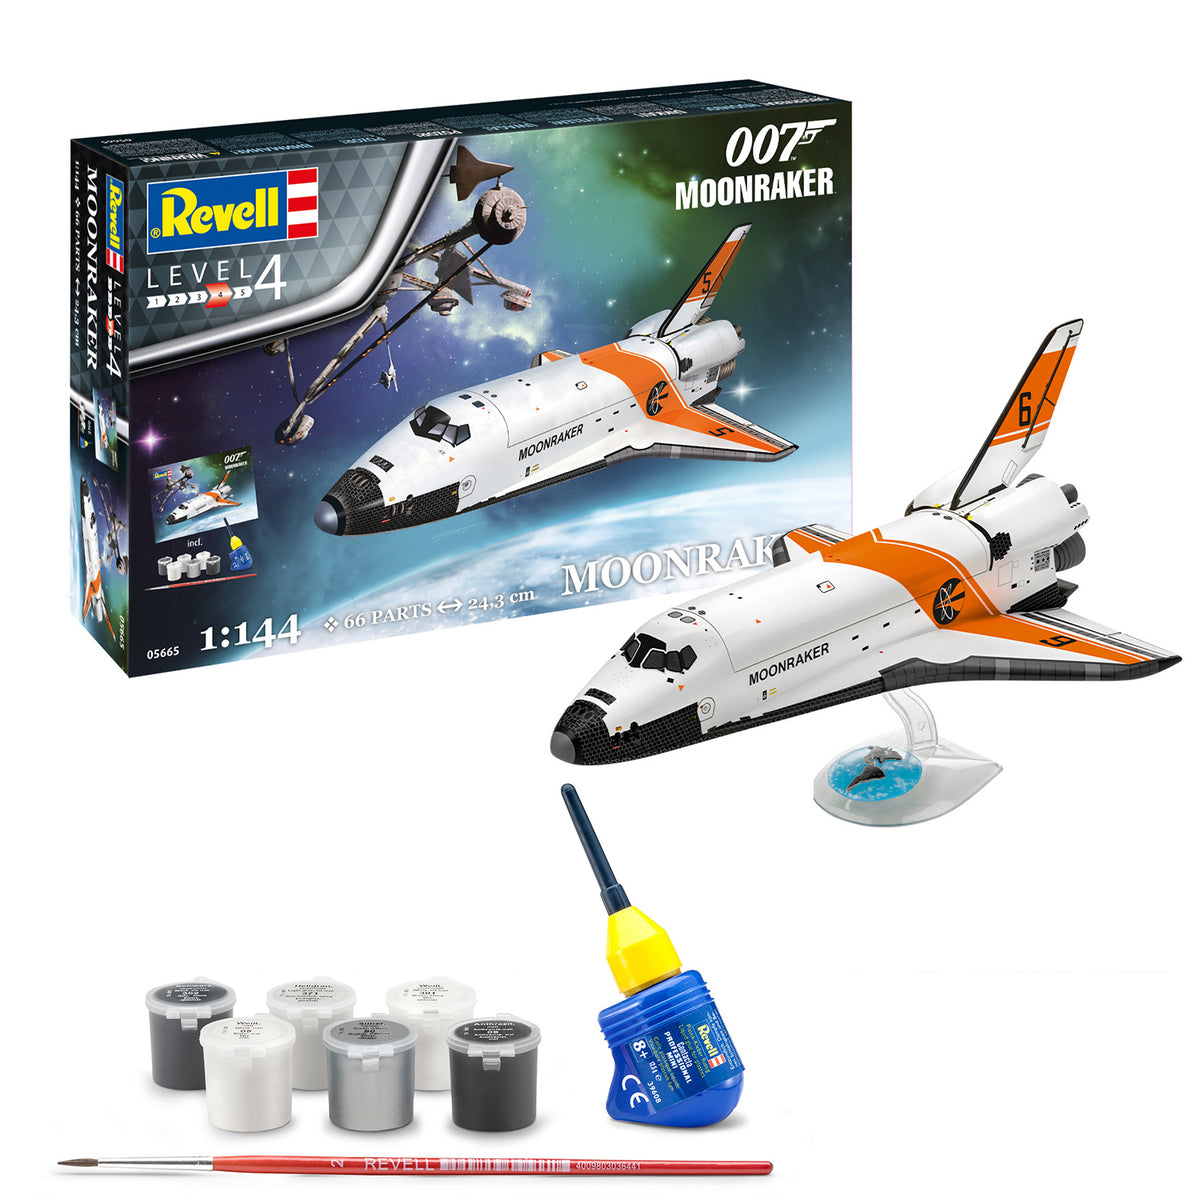 James Bond Space Shuttle Modellbausatz - Moonraker Edition - Von Revell